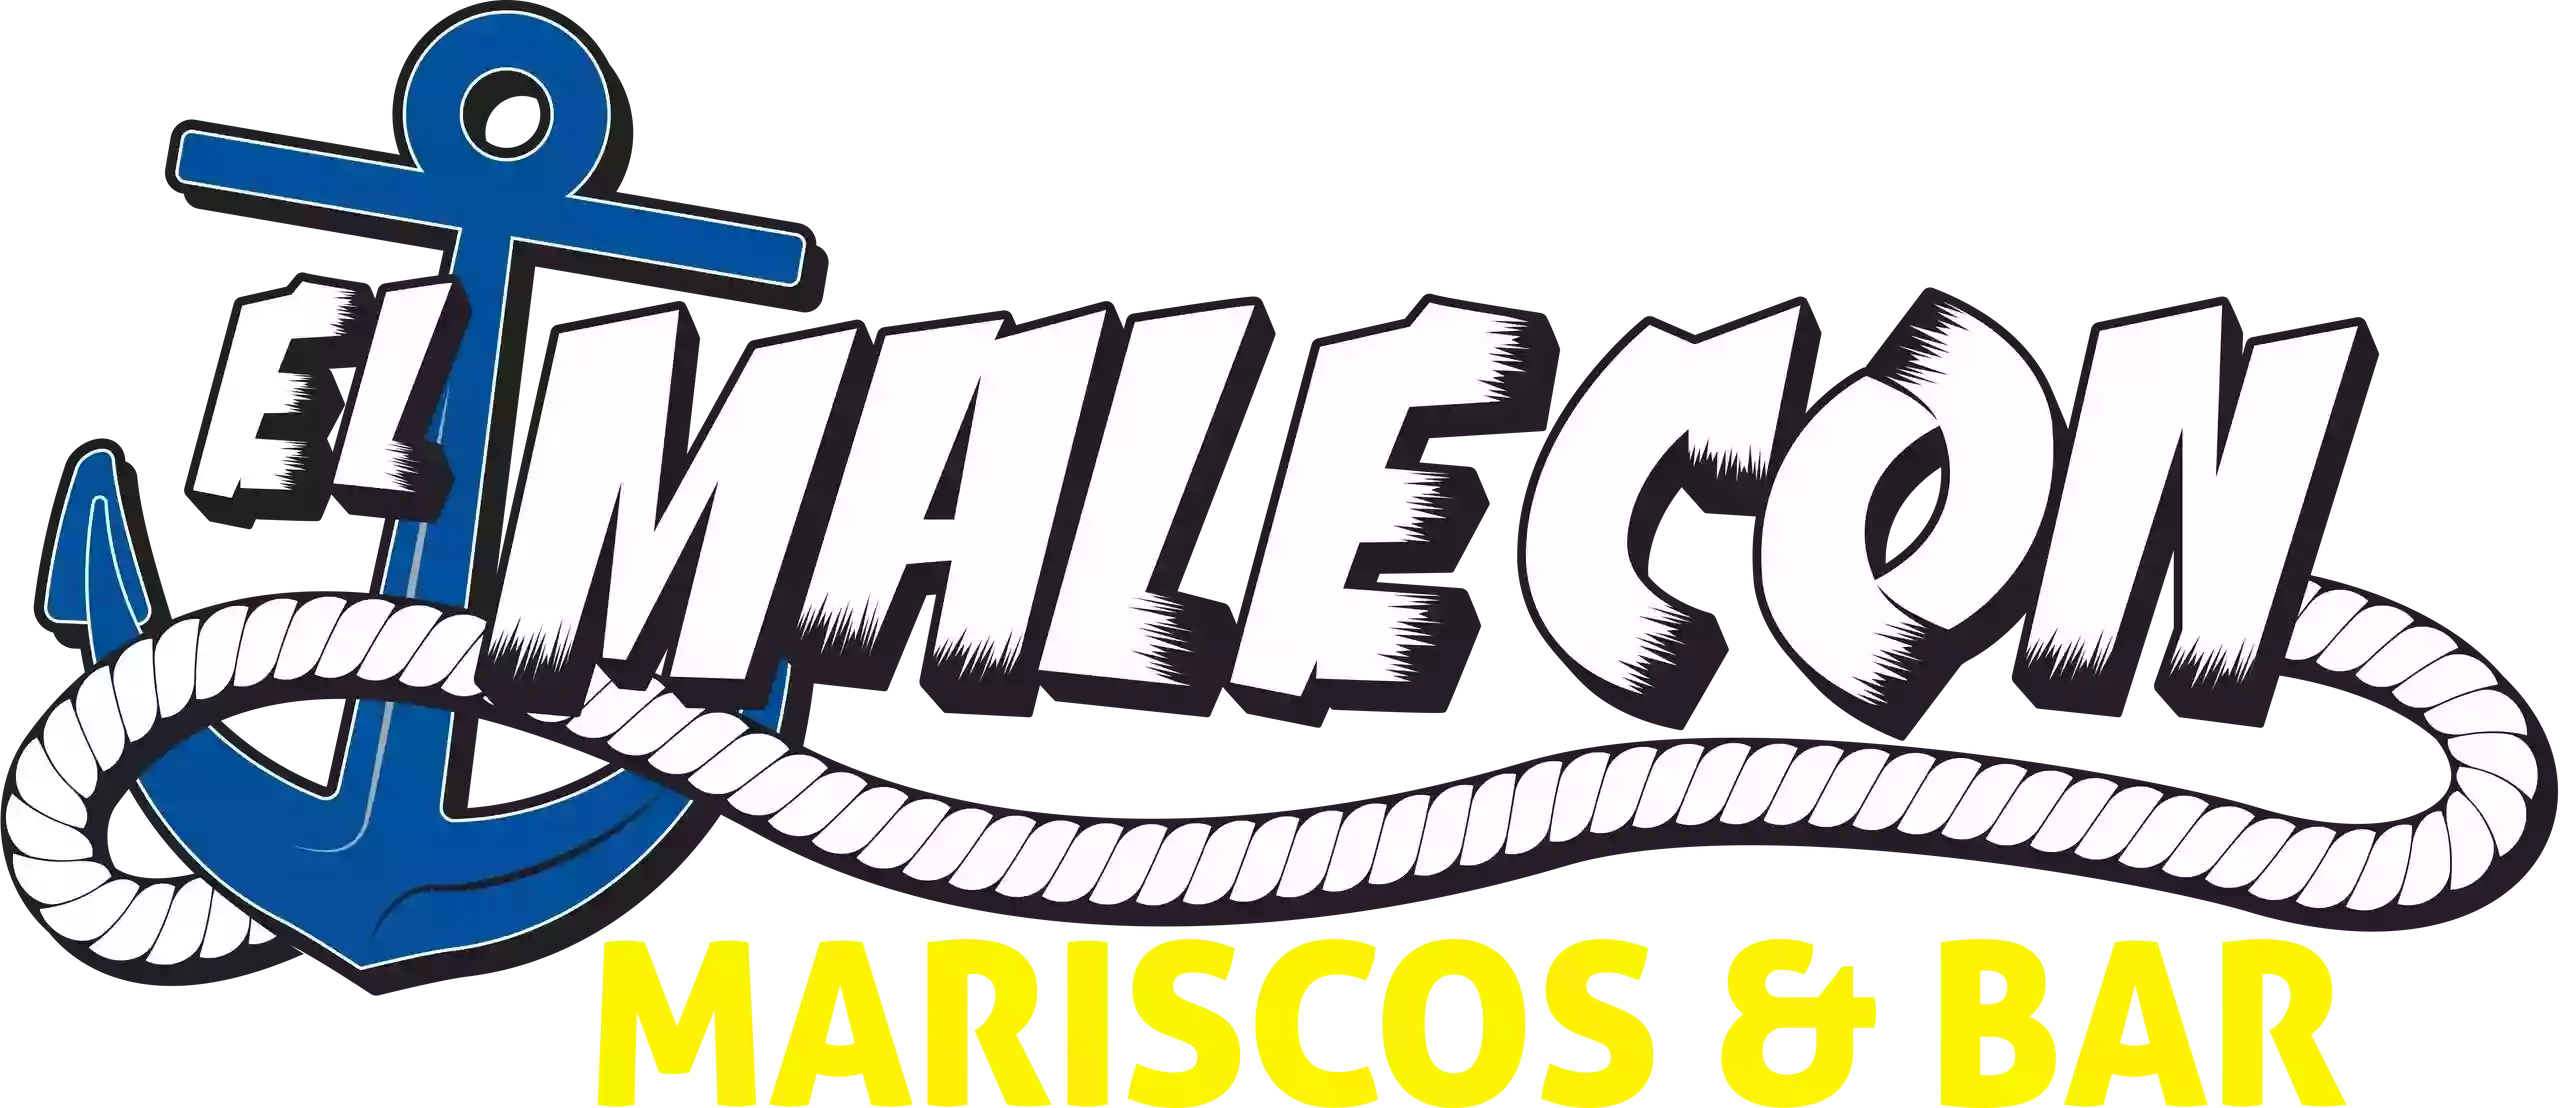 El Malecon Mariscos & Bar